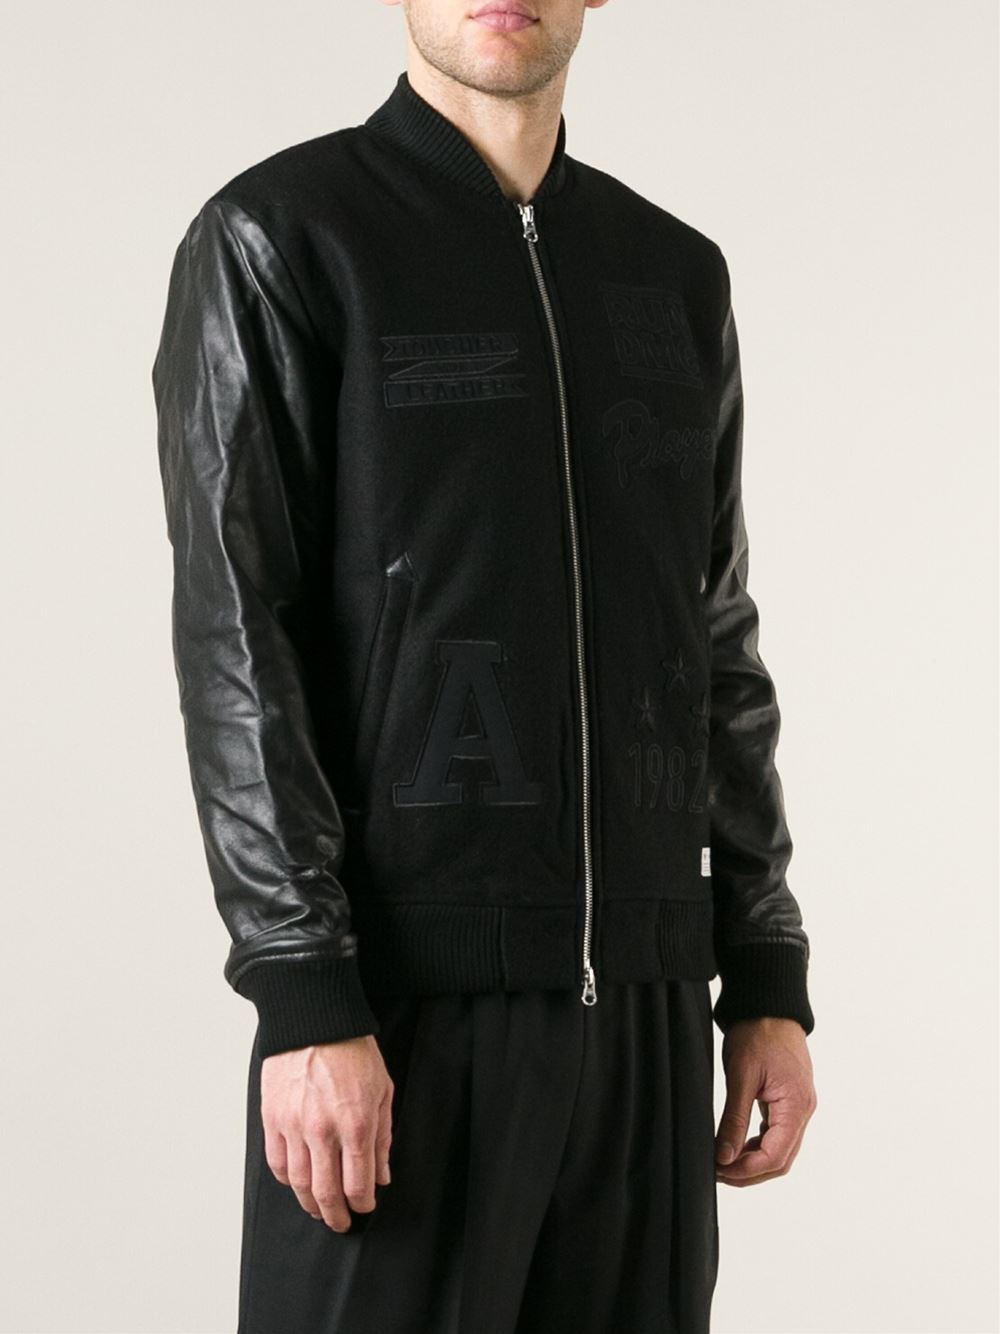 انسجام بحث عمليه التنفس adidas black leather jacket - theleopard.org